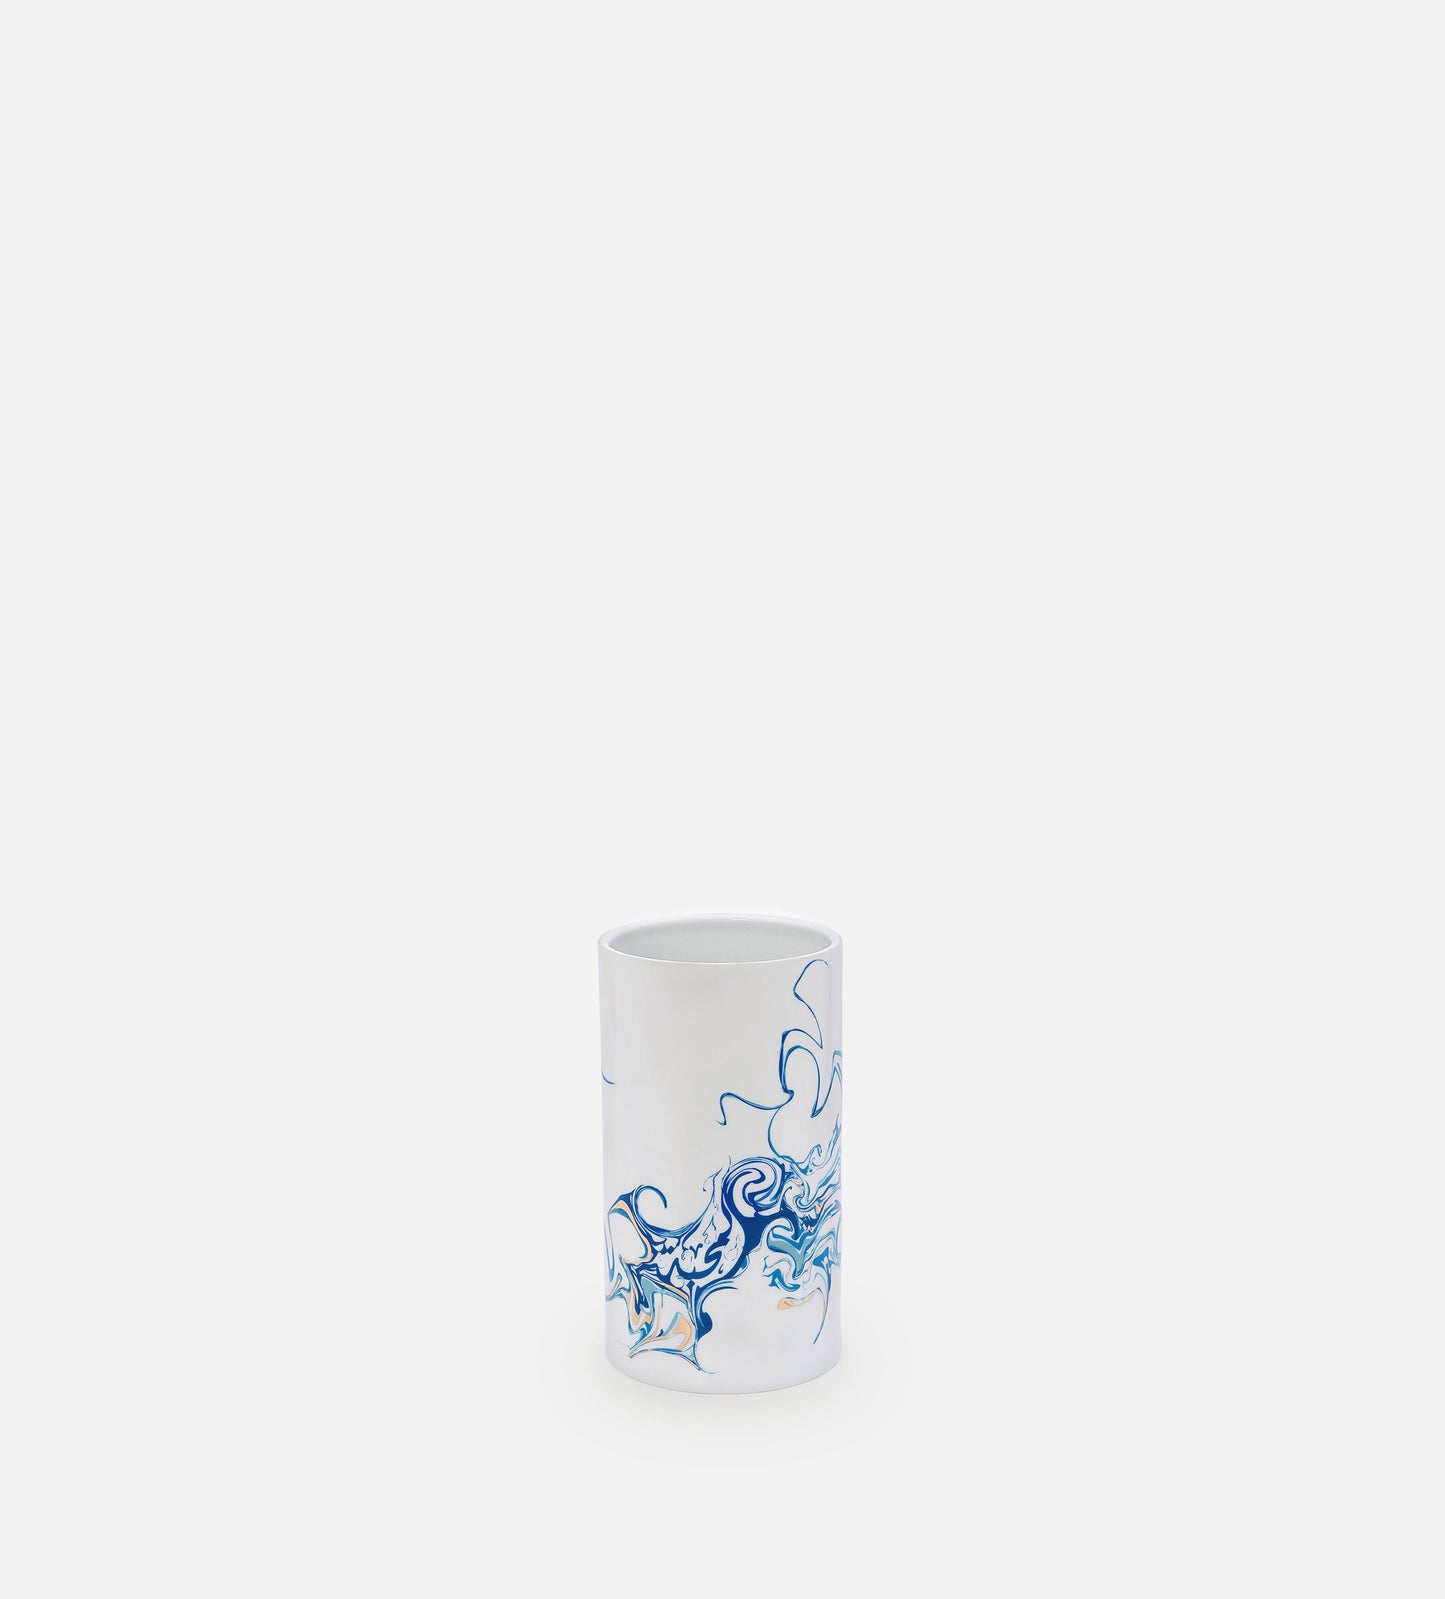 Metamorphosis Vase